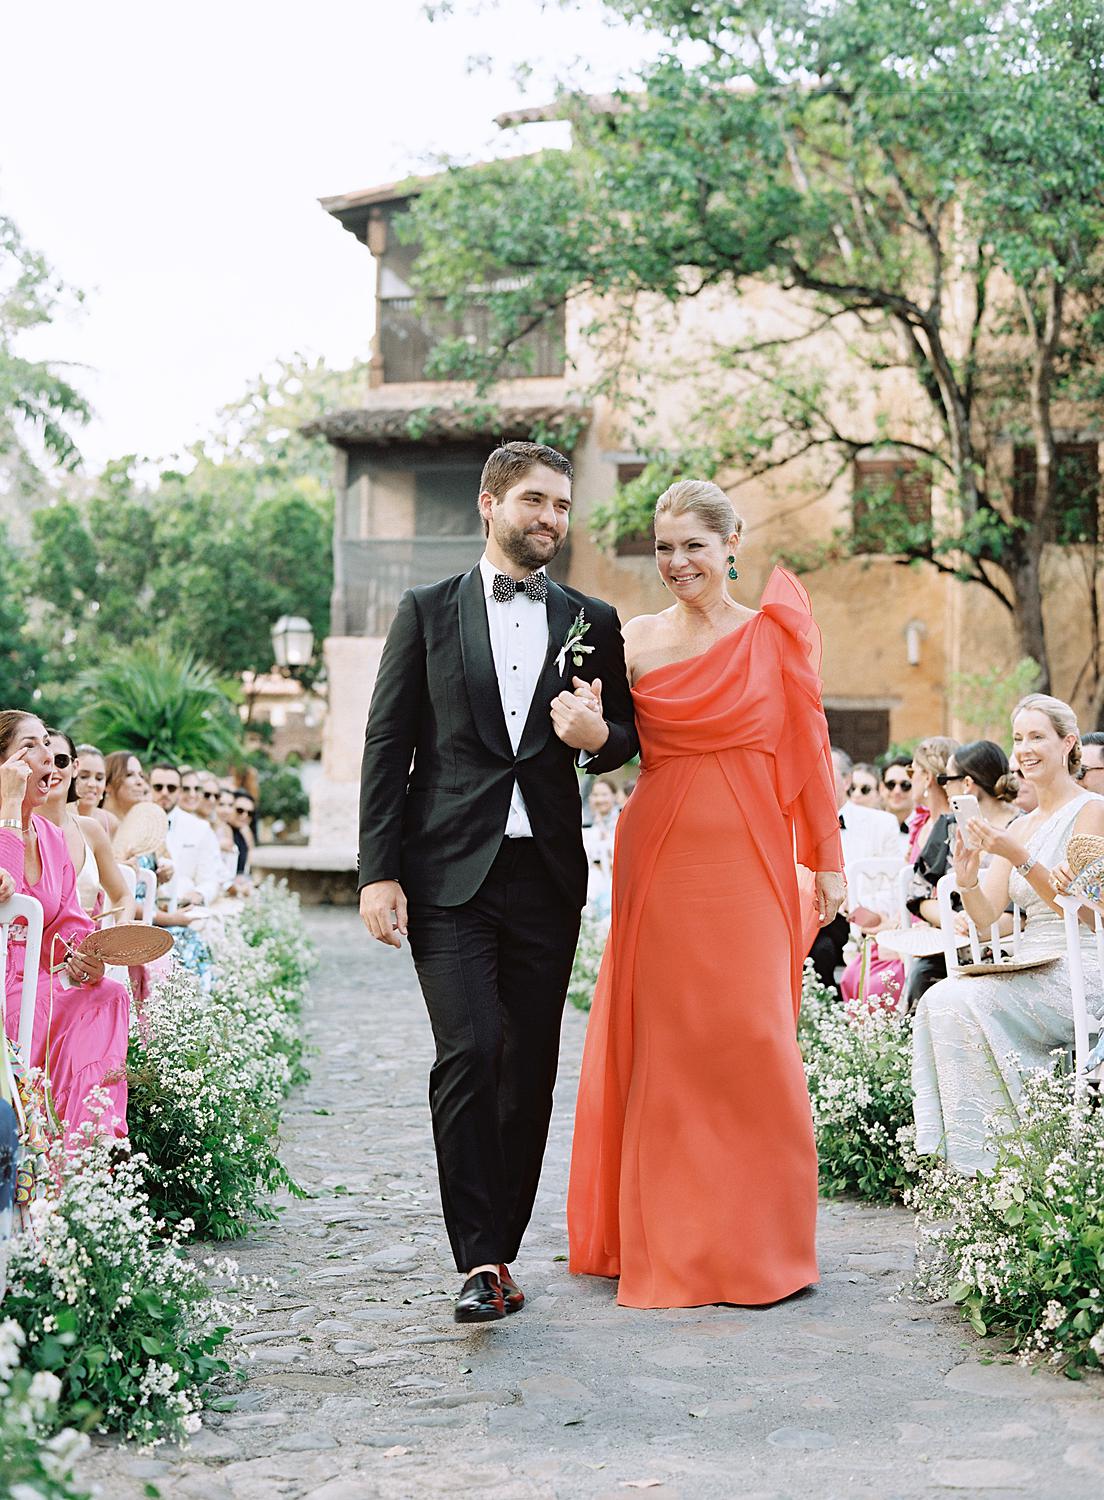 Groom walks in with his mother for a wedding at Altos de Chavón wedding.